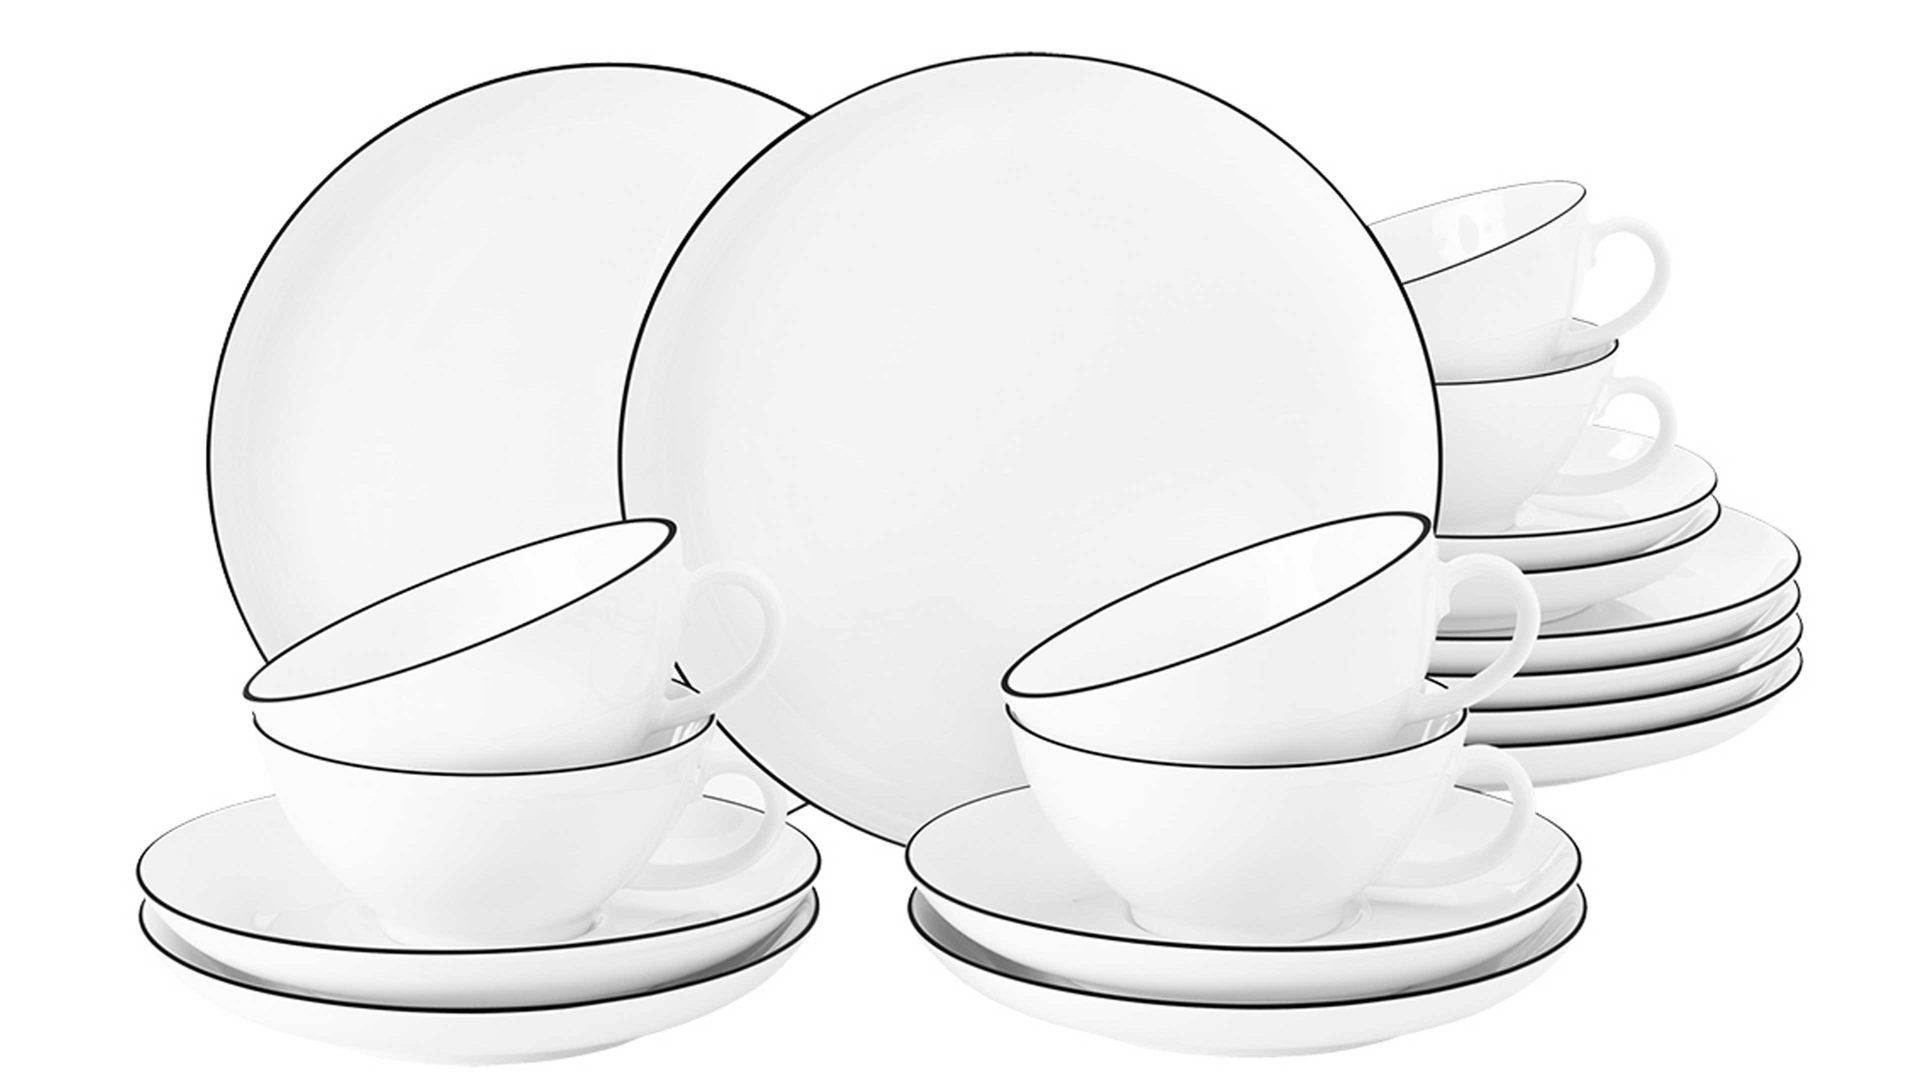 Teeservice Seltmann aus Porzellan in Weiß Seltmann Teeservice Lido weißes Porzellan - 18-teilig, große Tassen